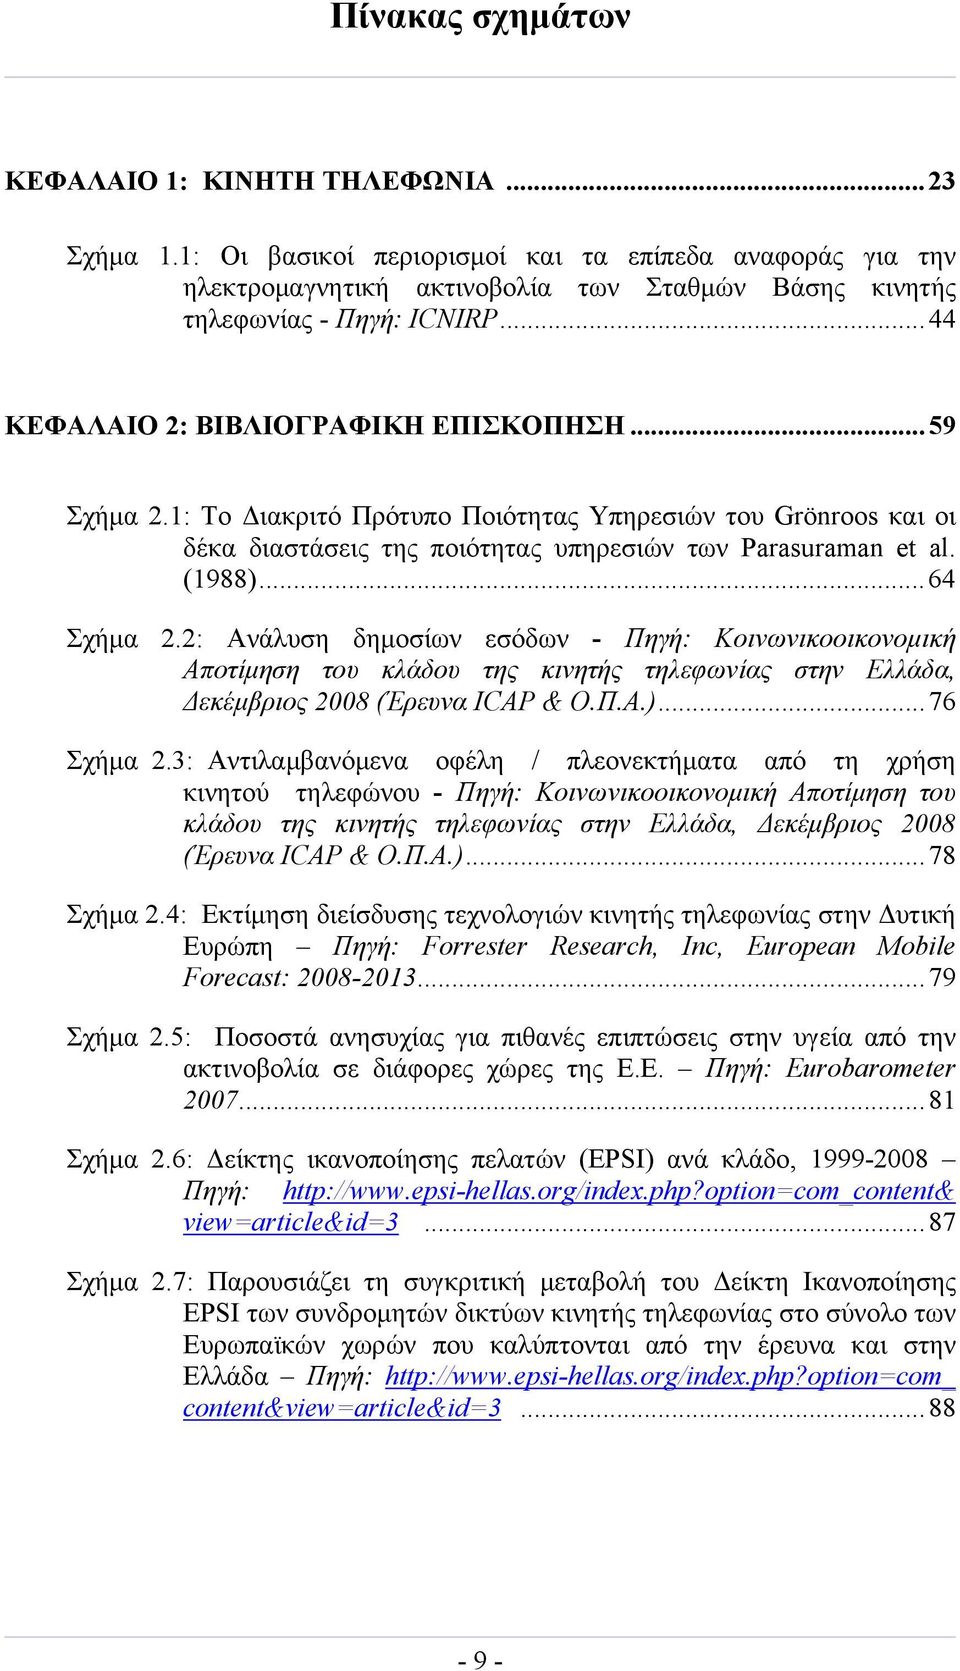 2: Ανάλυση δημοσίων εσόδων - Πηγή: Κοινωνικοοικονομική Αποτίμηση του κλάδου της κινητής τηλεφωνίας στην Ελλάδα, Δεκέμβριος 2008 (Έρευνα ICAP & Ο.Π.Α.)...76 Σχήμα 2.